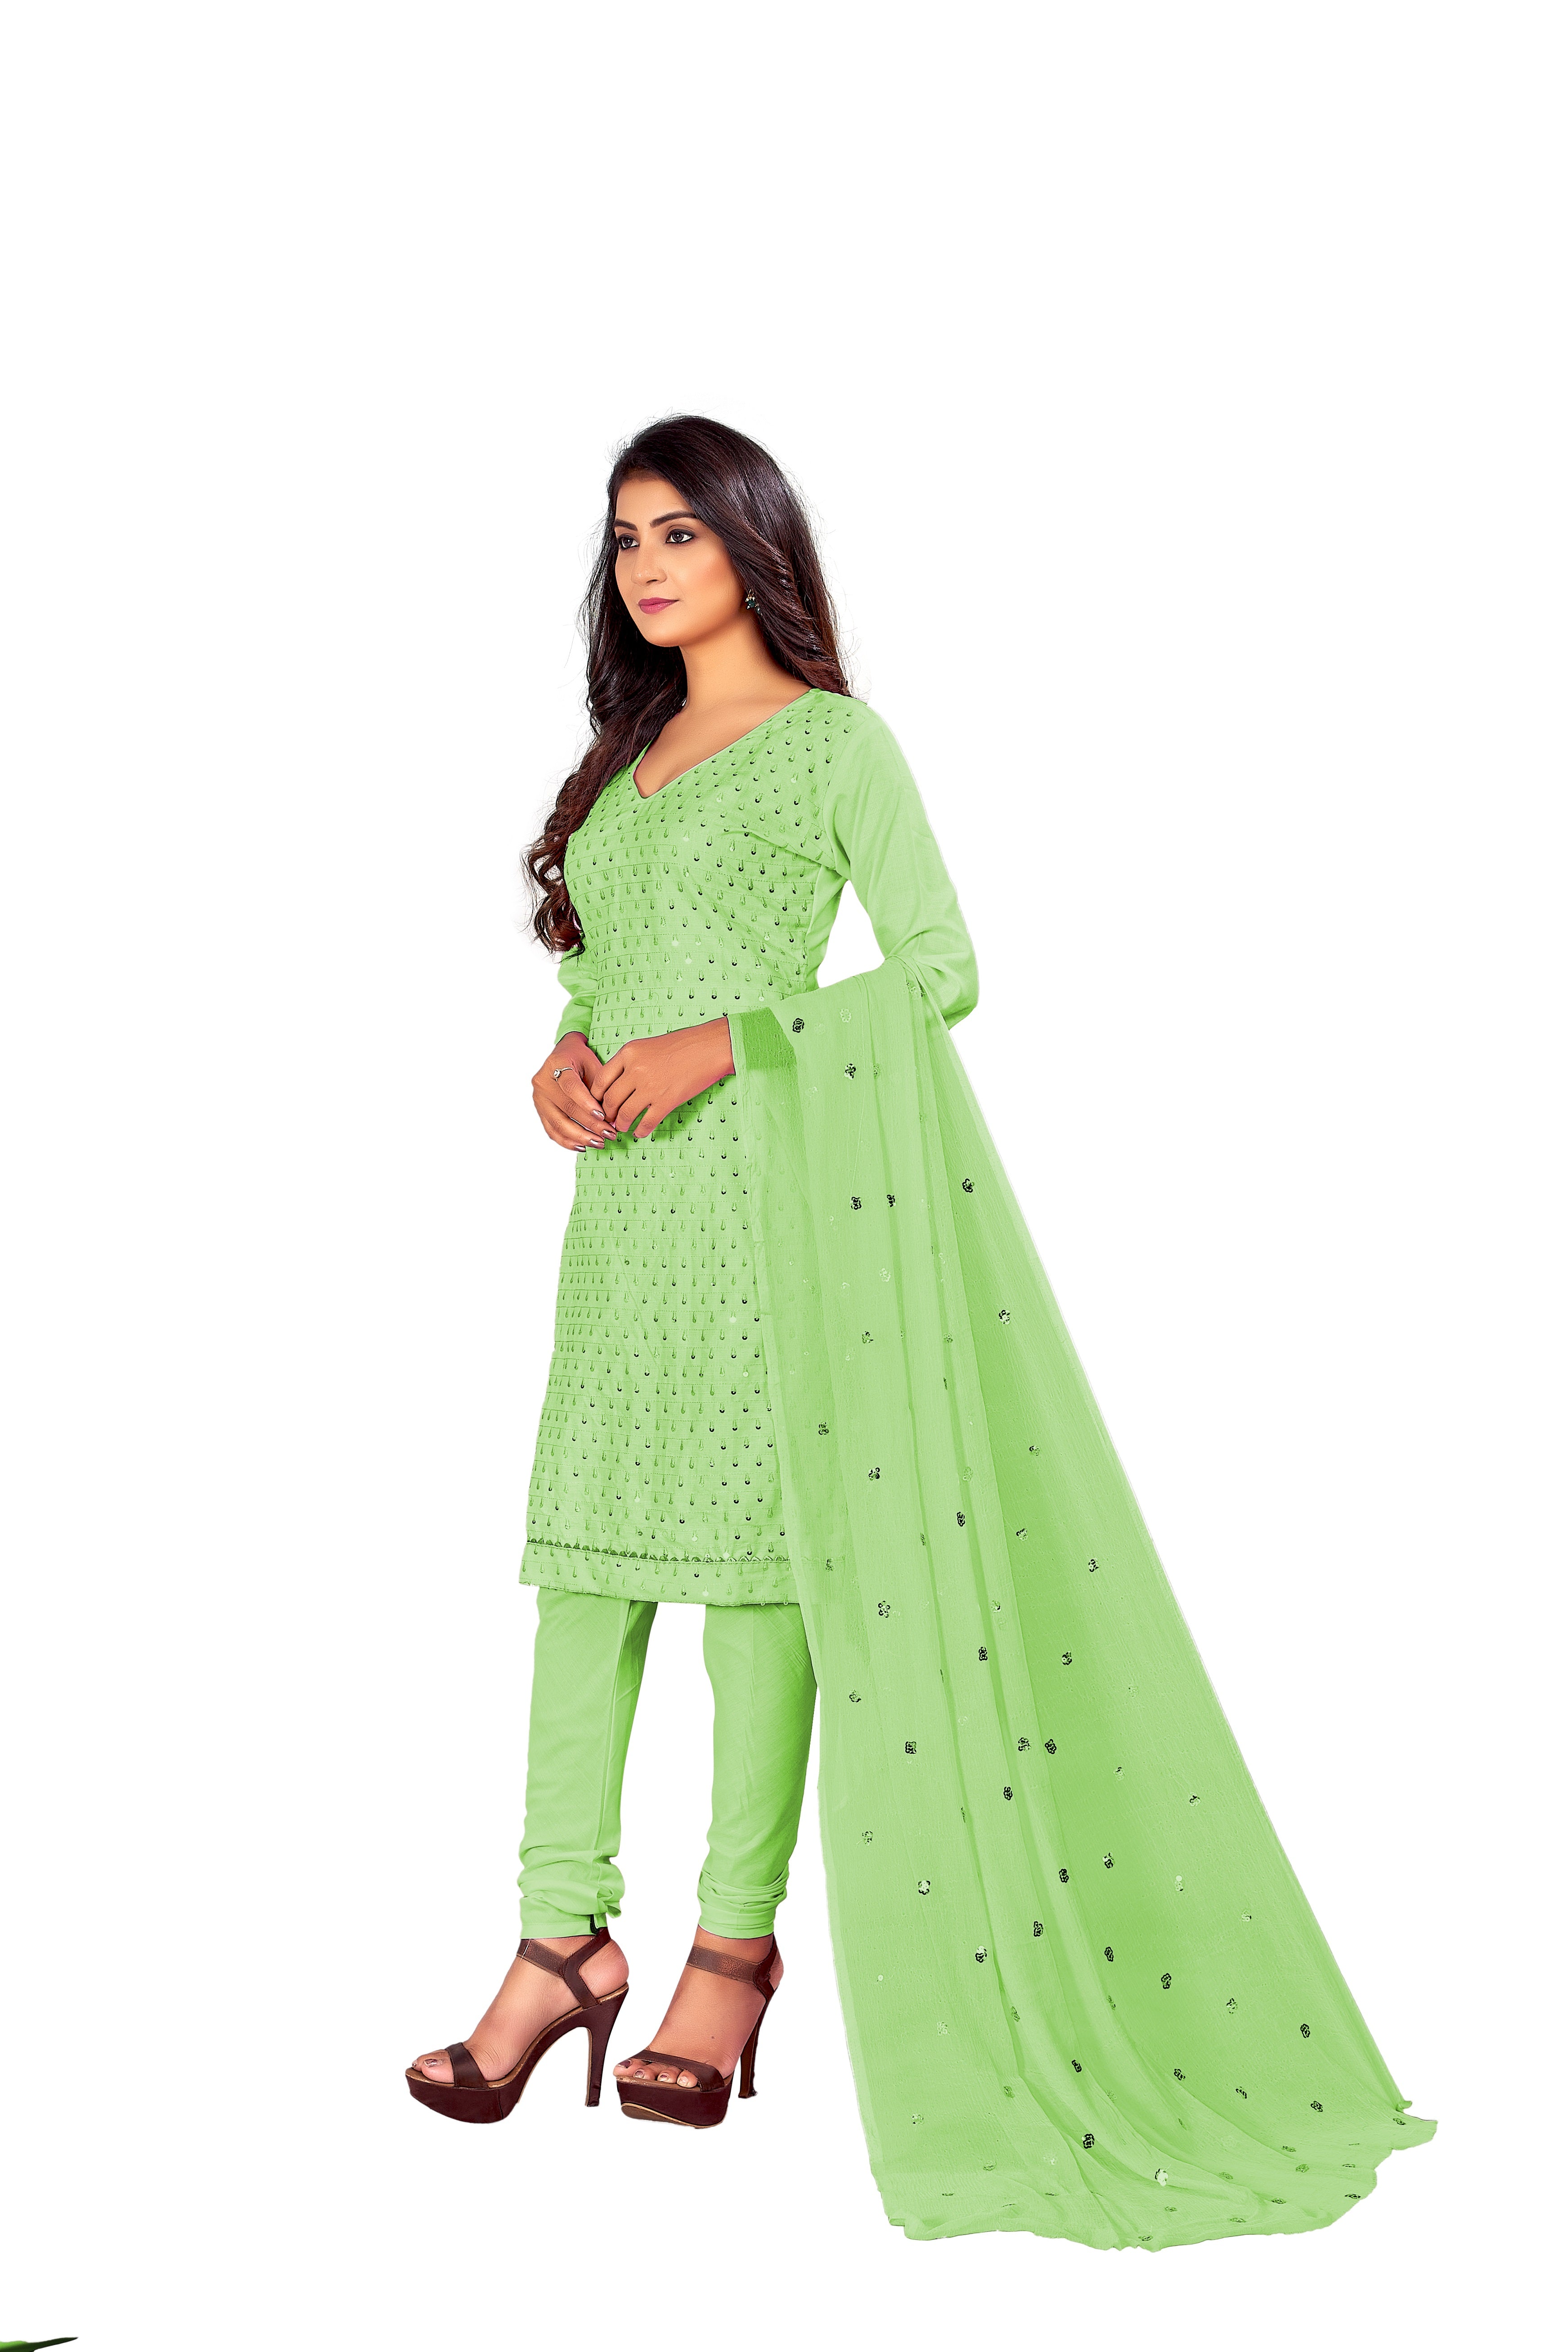 Women's Parrot Green Colour Semi-Stitched Suit Sets - Dwija Fashion